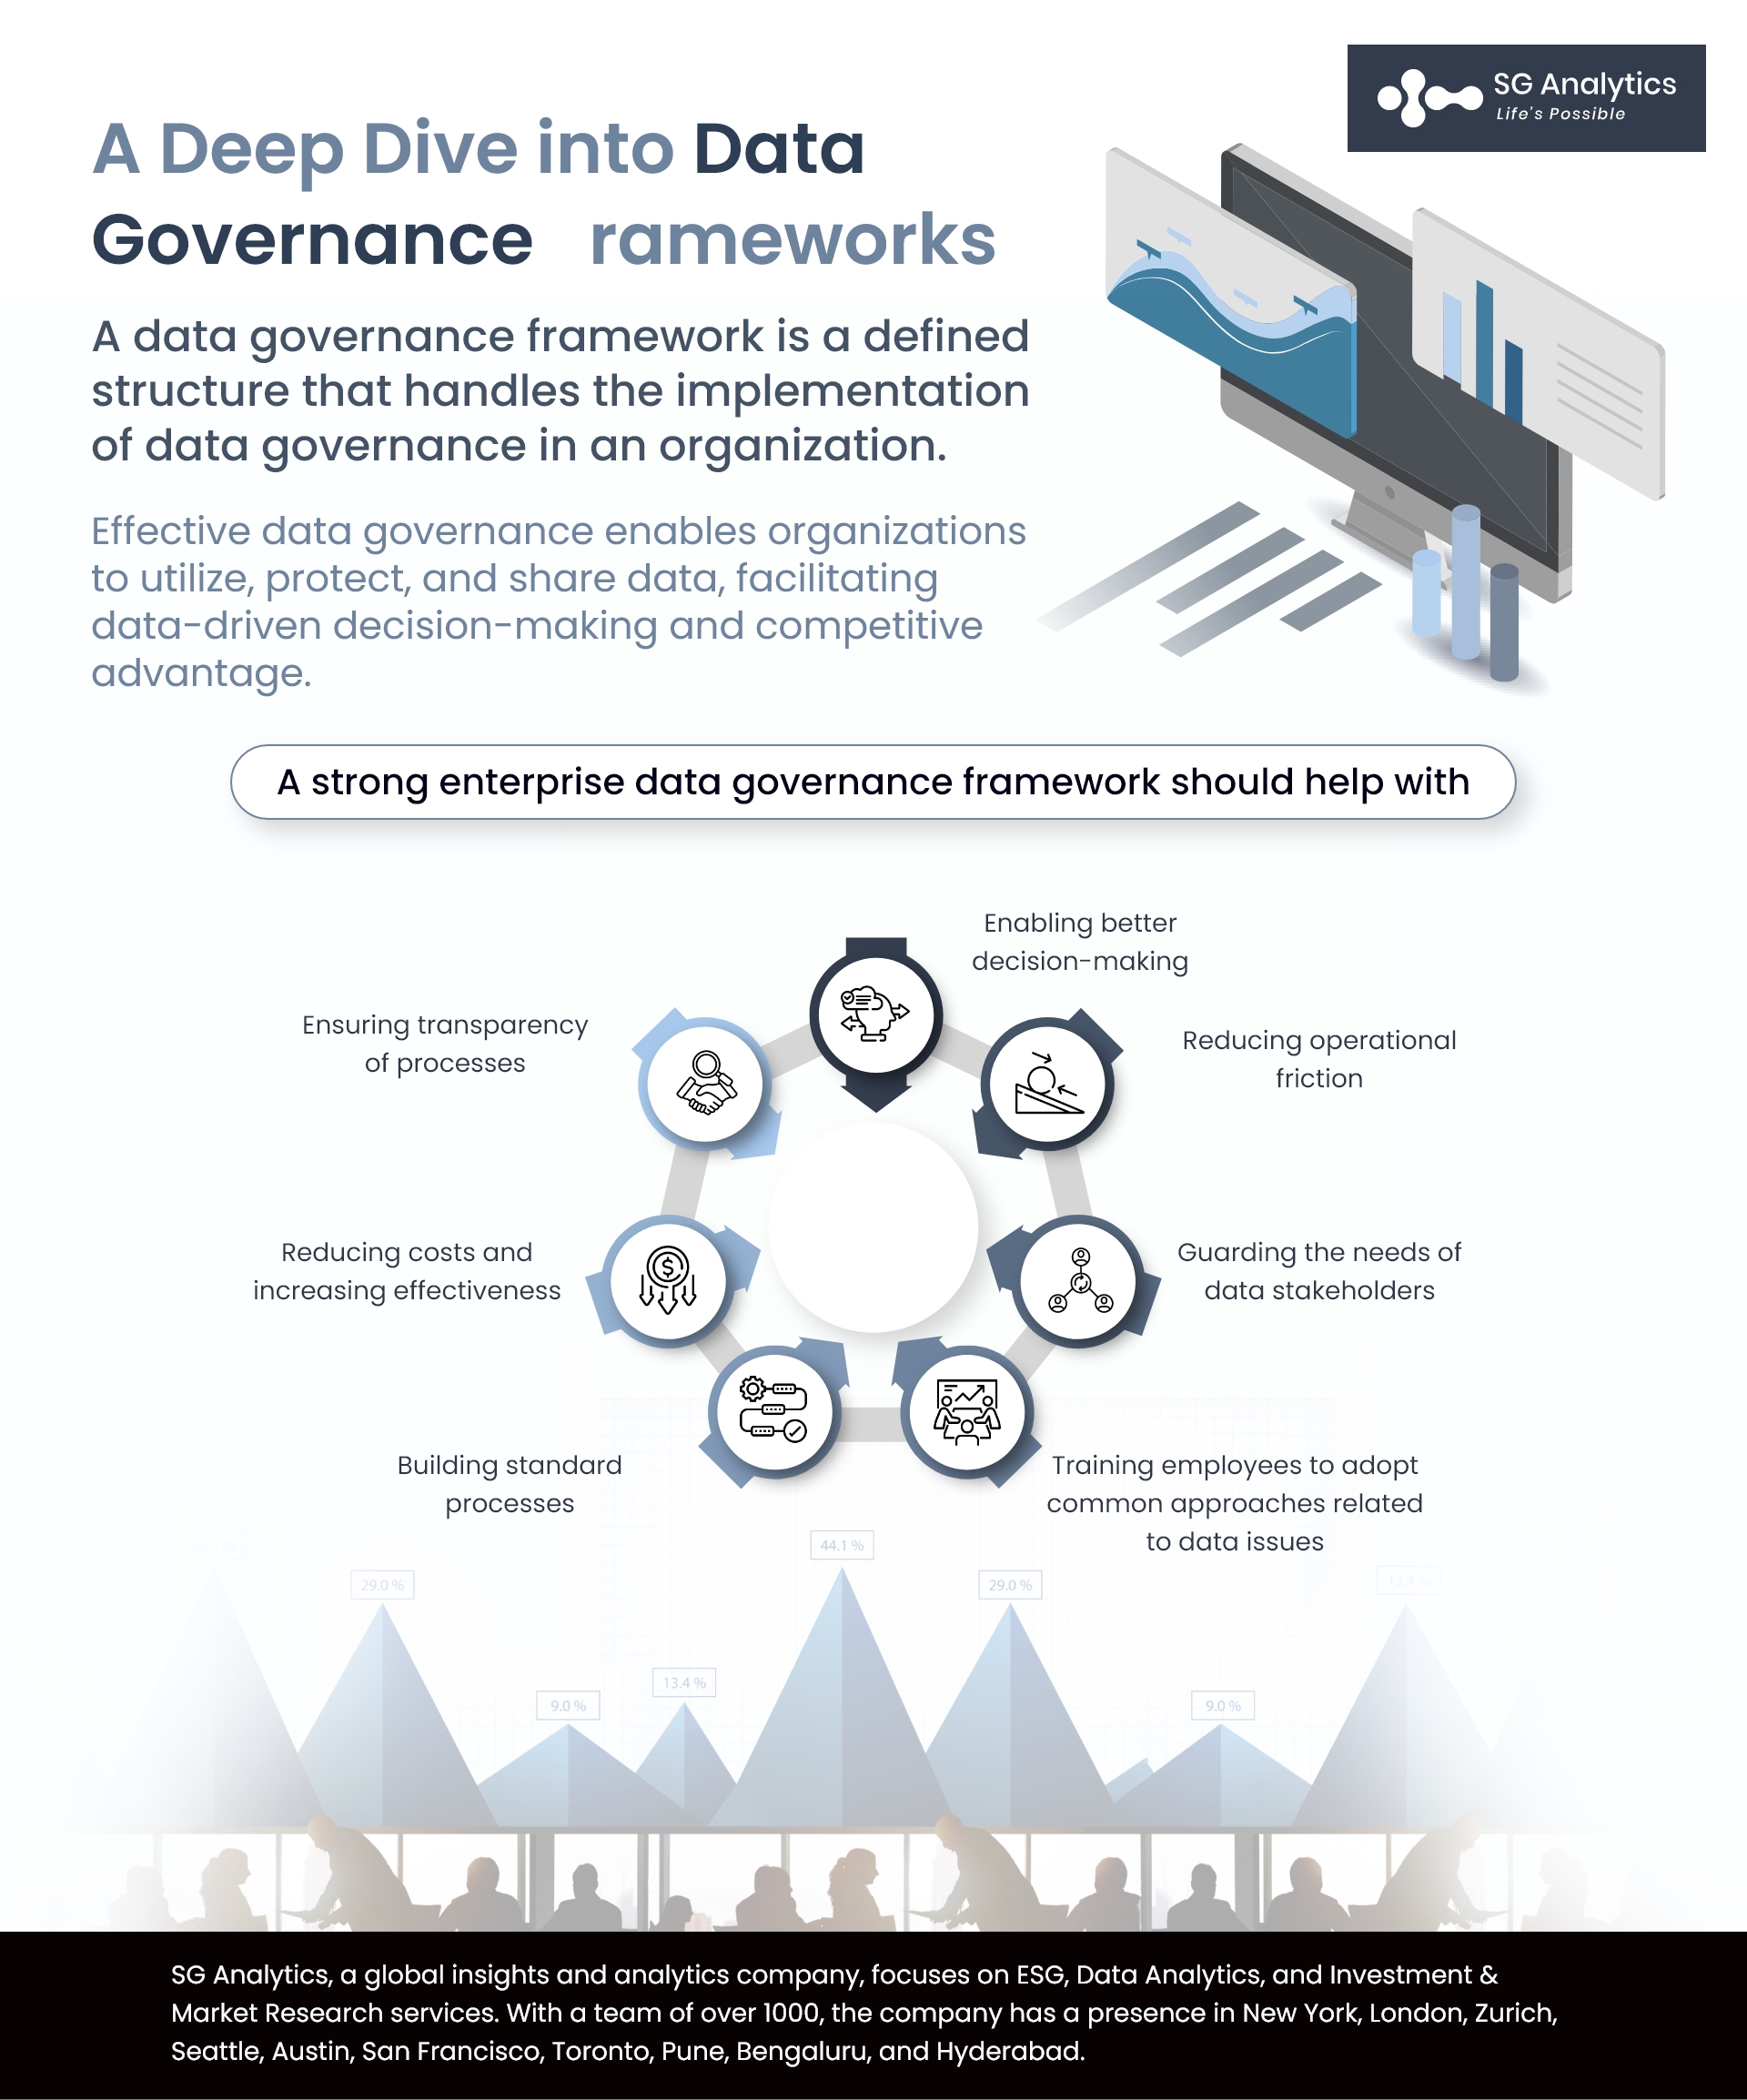 Data Governance Frameworks